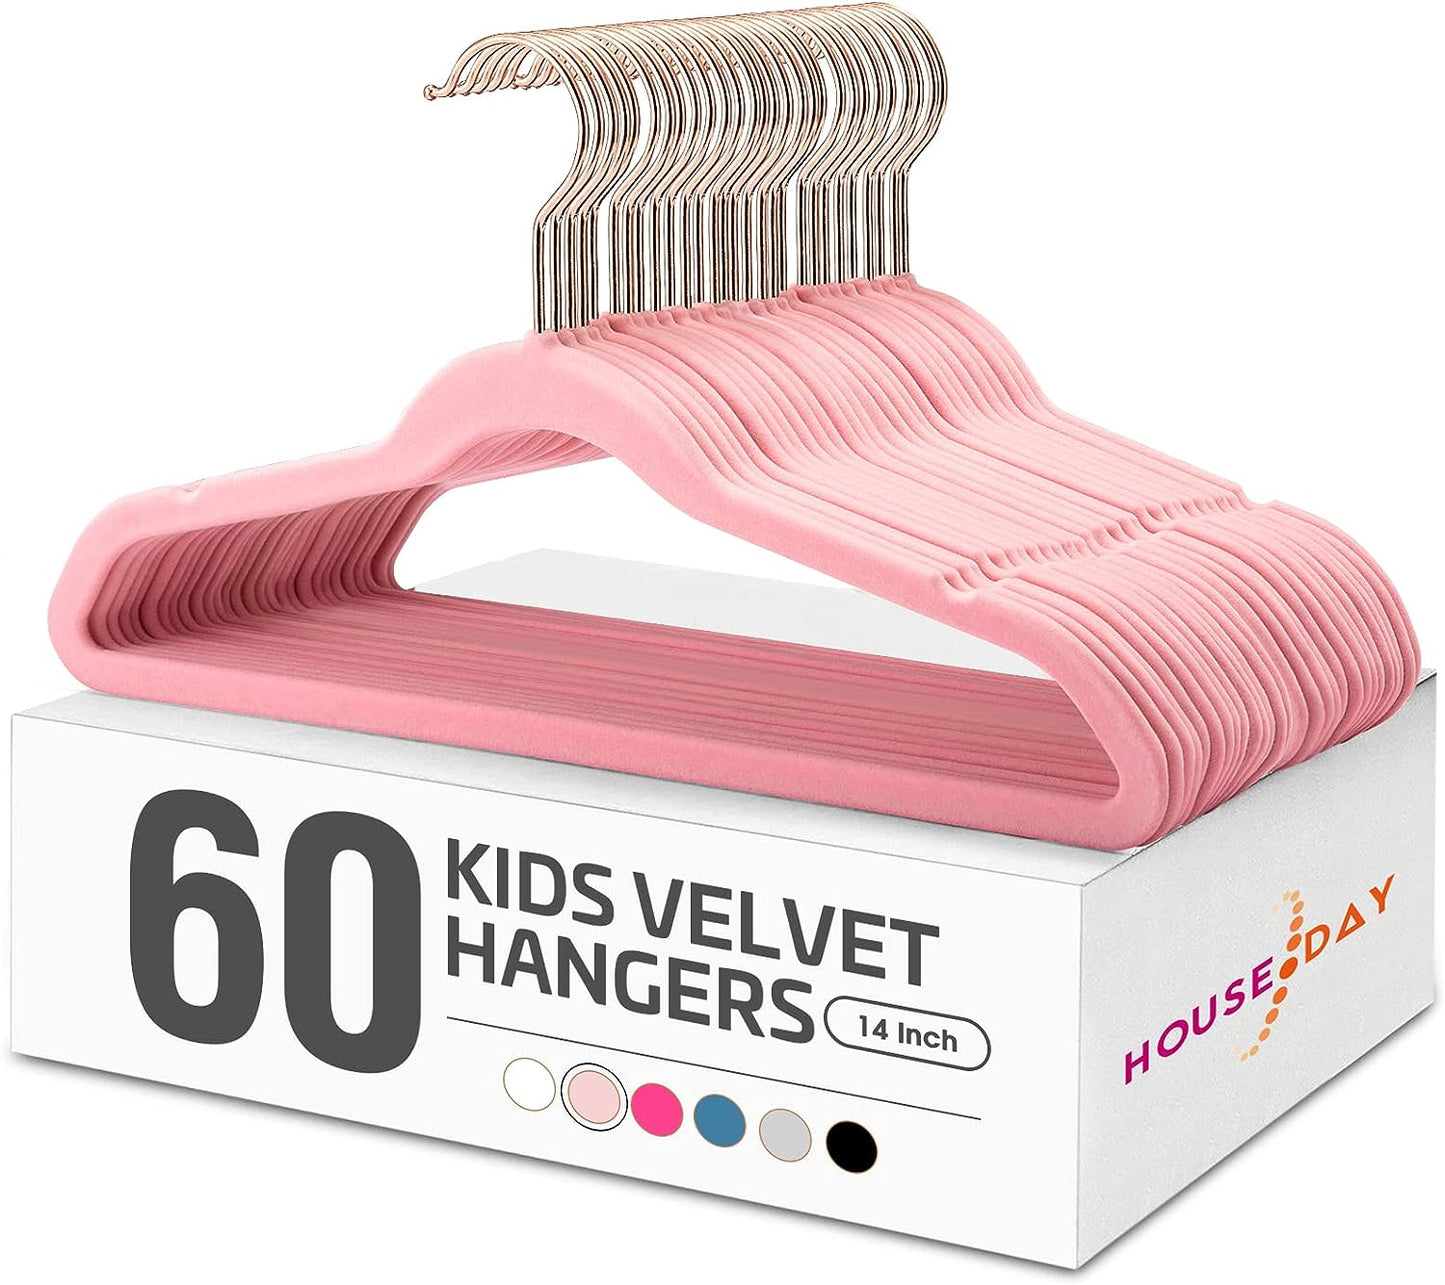 House Day 14 Inch Velvet Kids Hangers 60 Pack